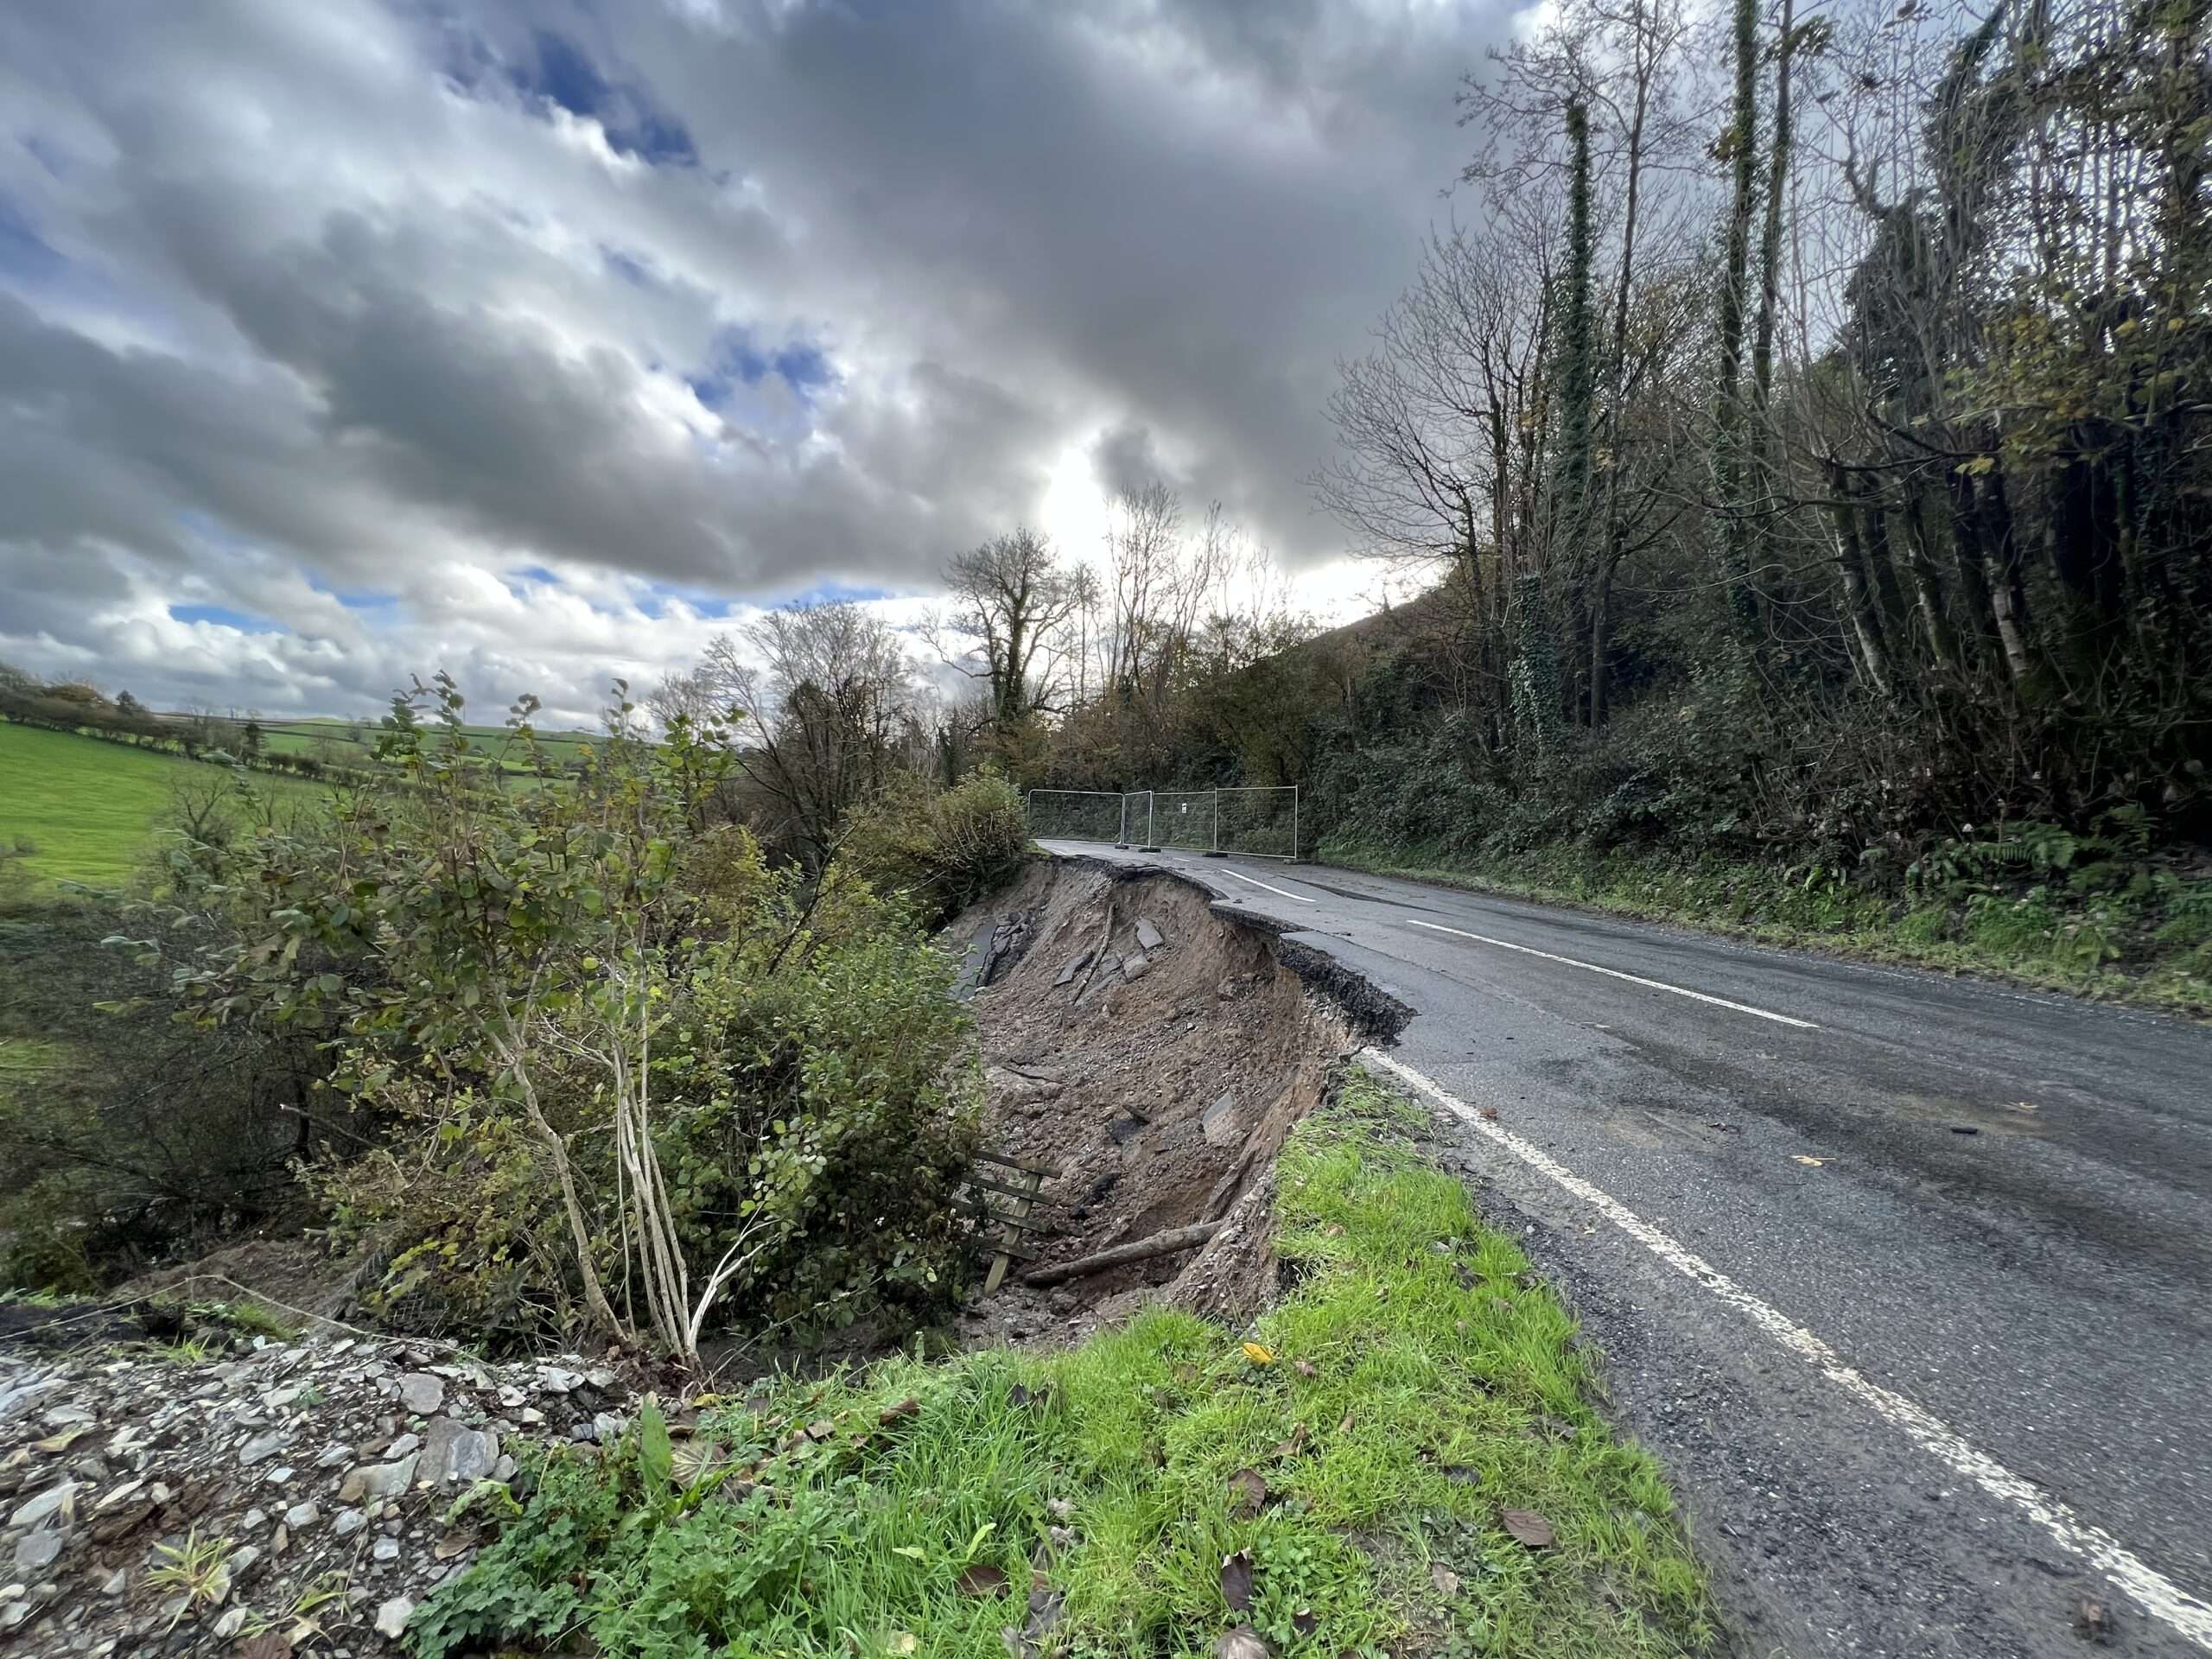 Landslide closes road to Carmarthen